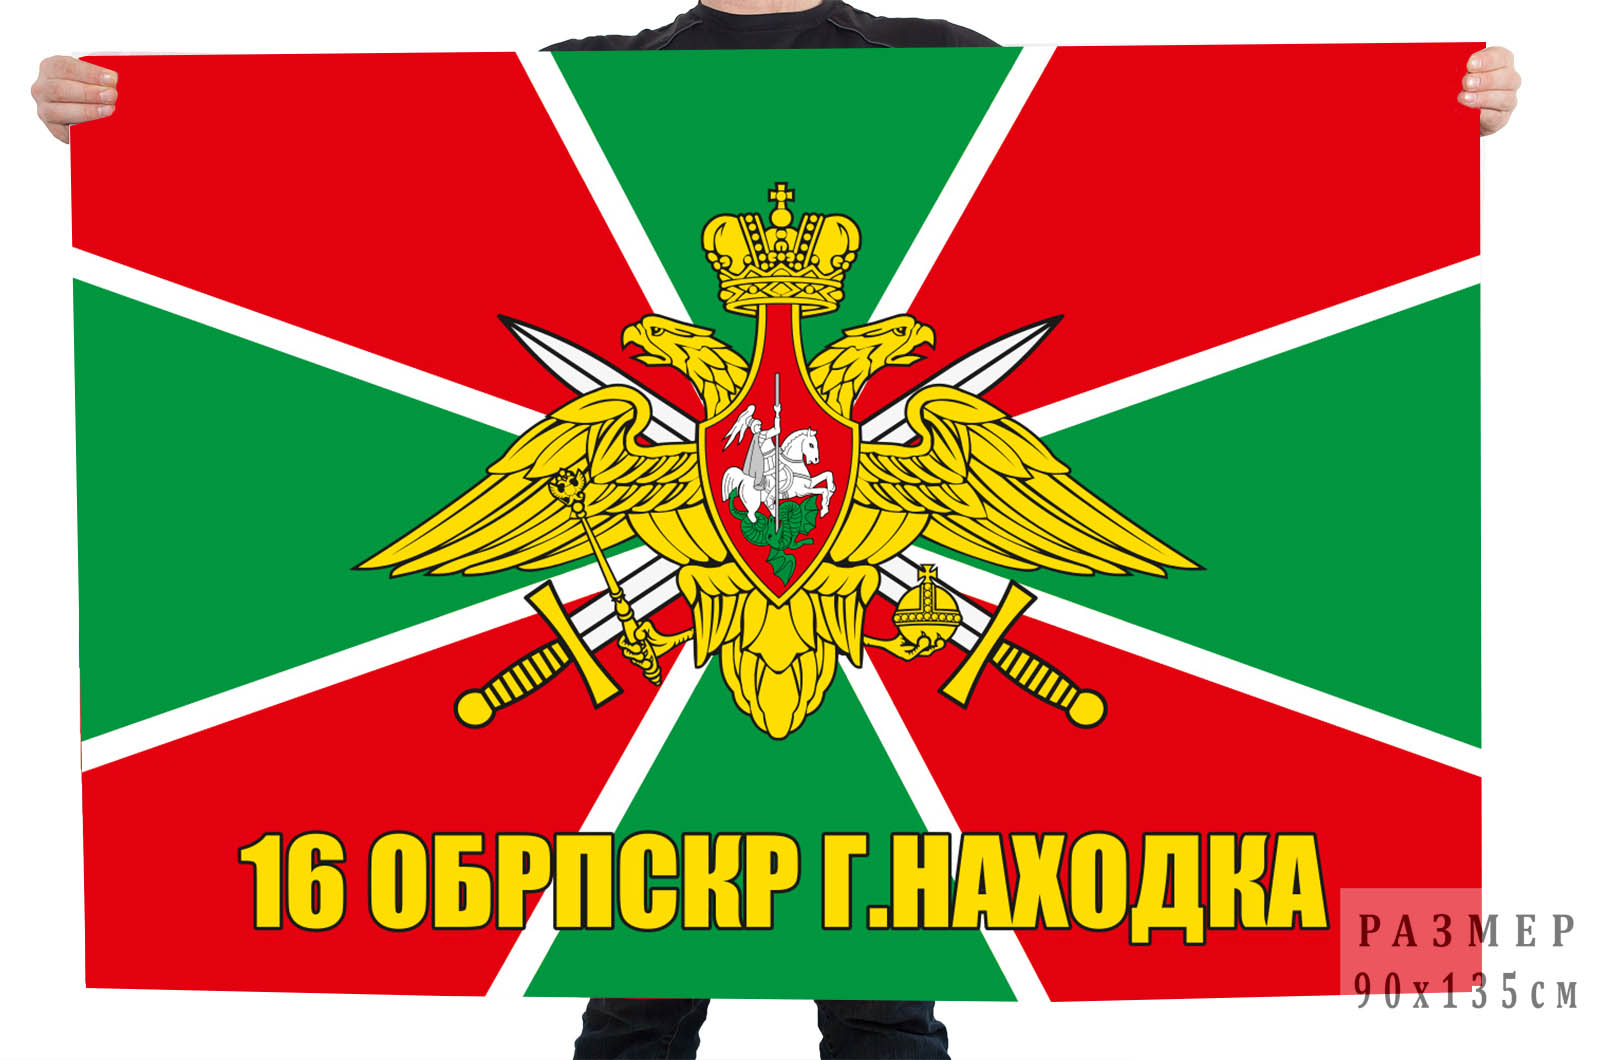 Заказать недорого в Москве флаг МЧПВ 16 ОБрПСКР г. Находка